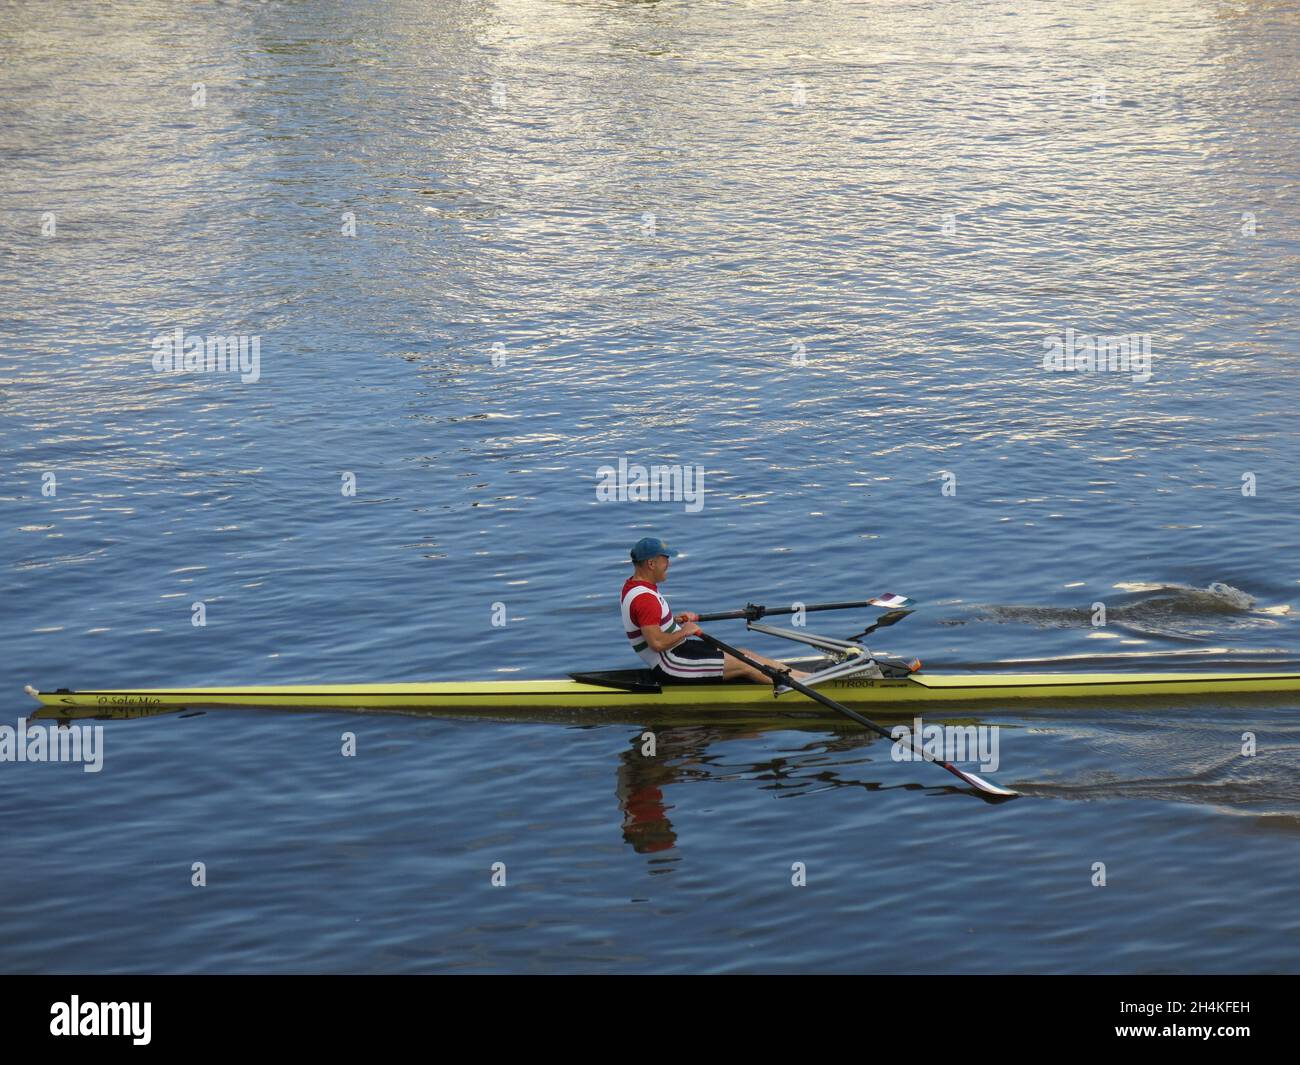 Sonntag auf der Themse: Ein Mann rudert auf dem Fluss in einem langen, schlanken gelben Rennwagen. Stockfoto